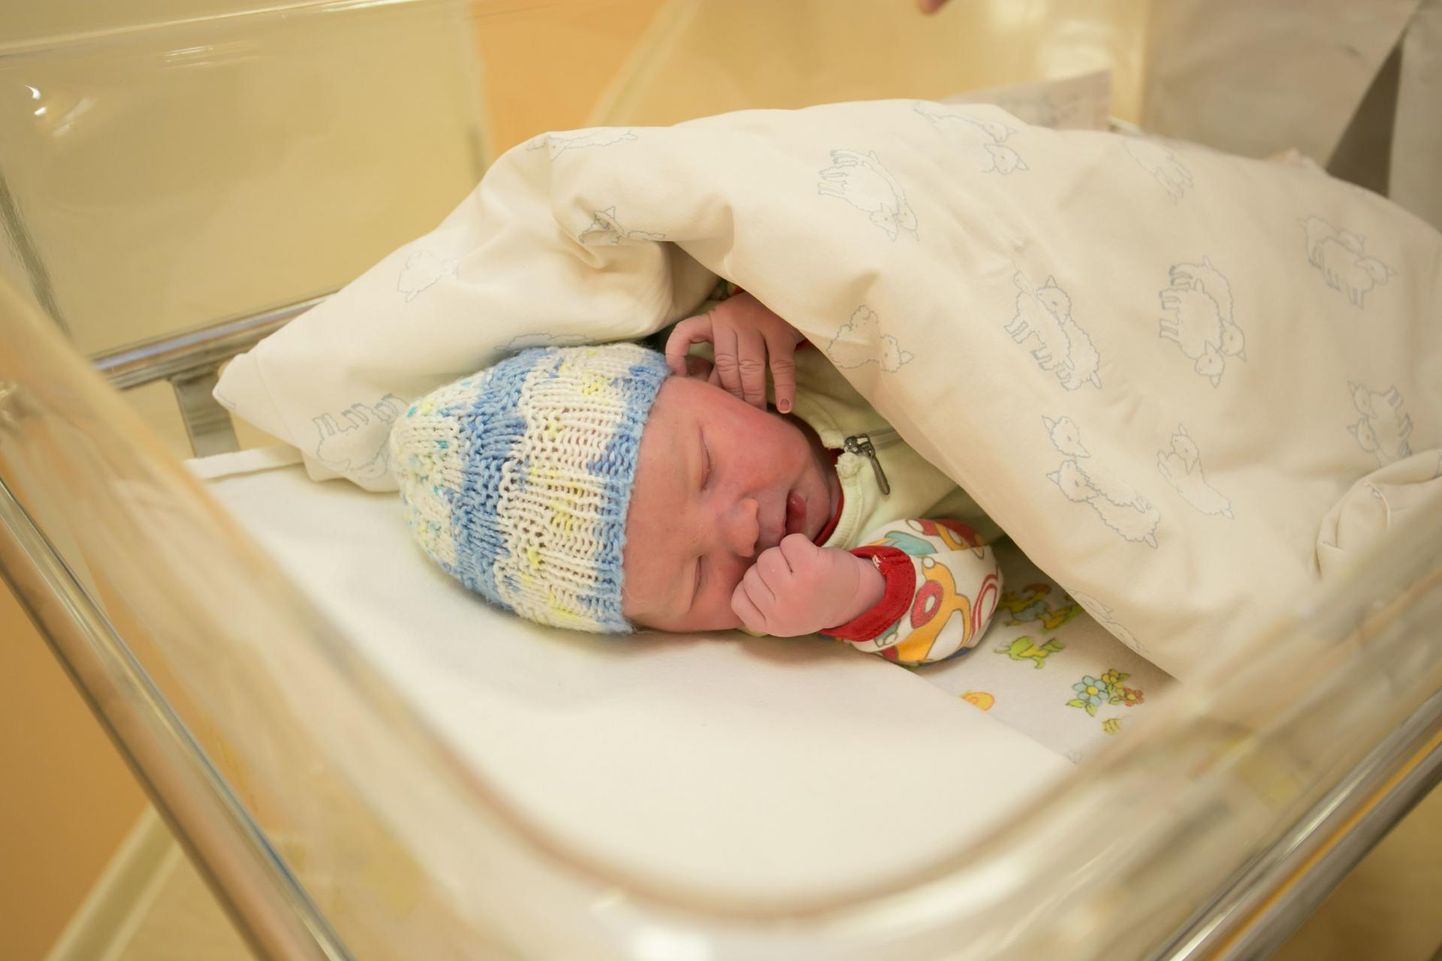 Rakvere haigla ei keela esialgu koroonaviiruse kartuses peresünnitusi. Nii lubatakse beebi ilmaletuleku juurde ka isasid. Foto on illustratiivne.